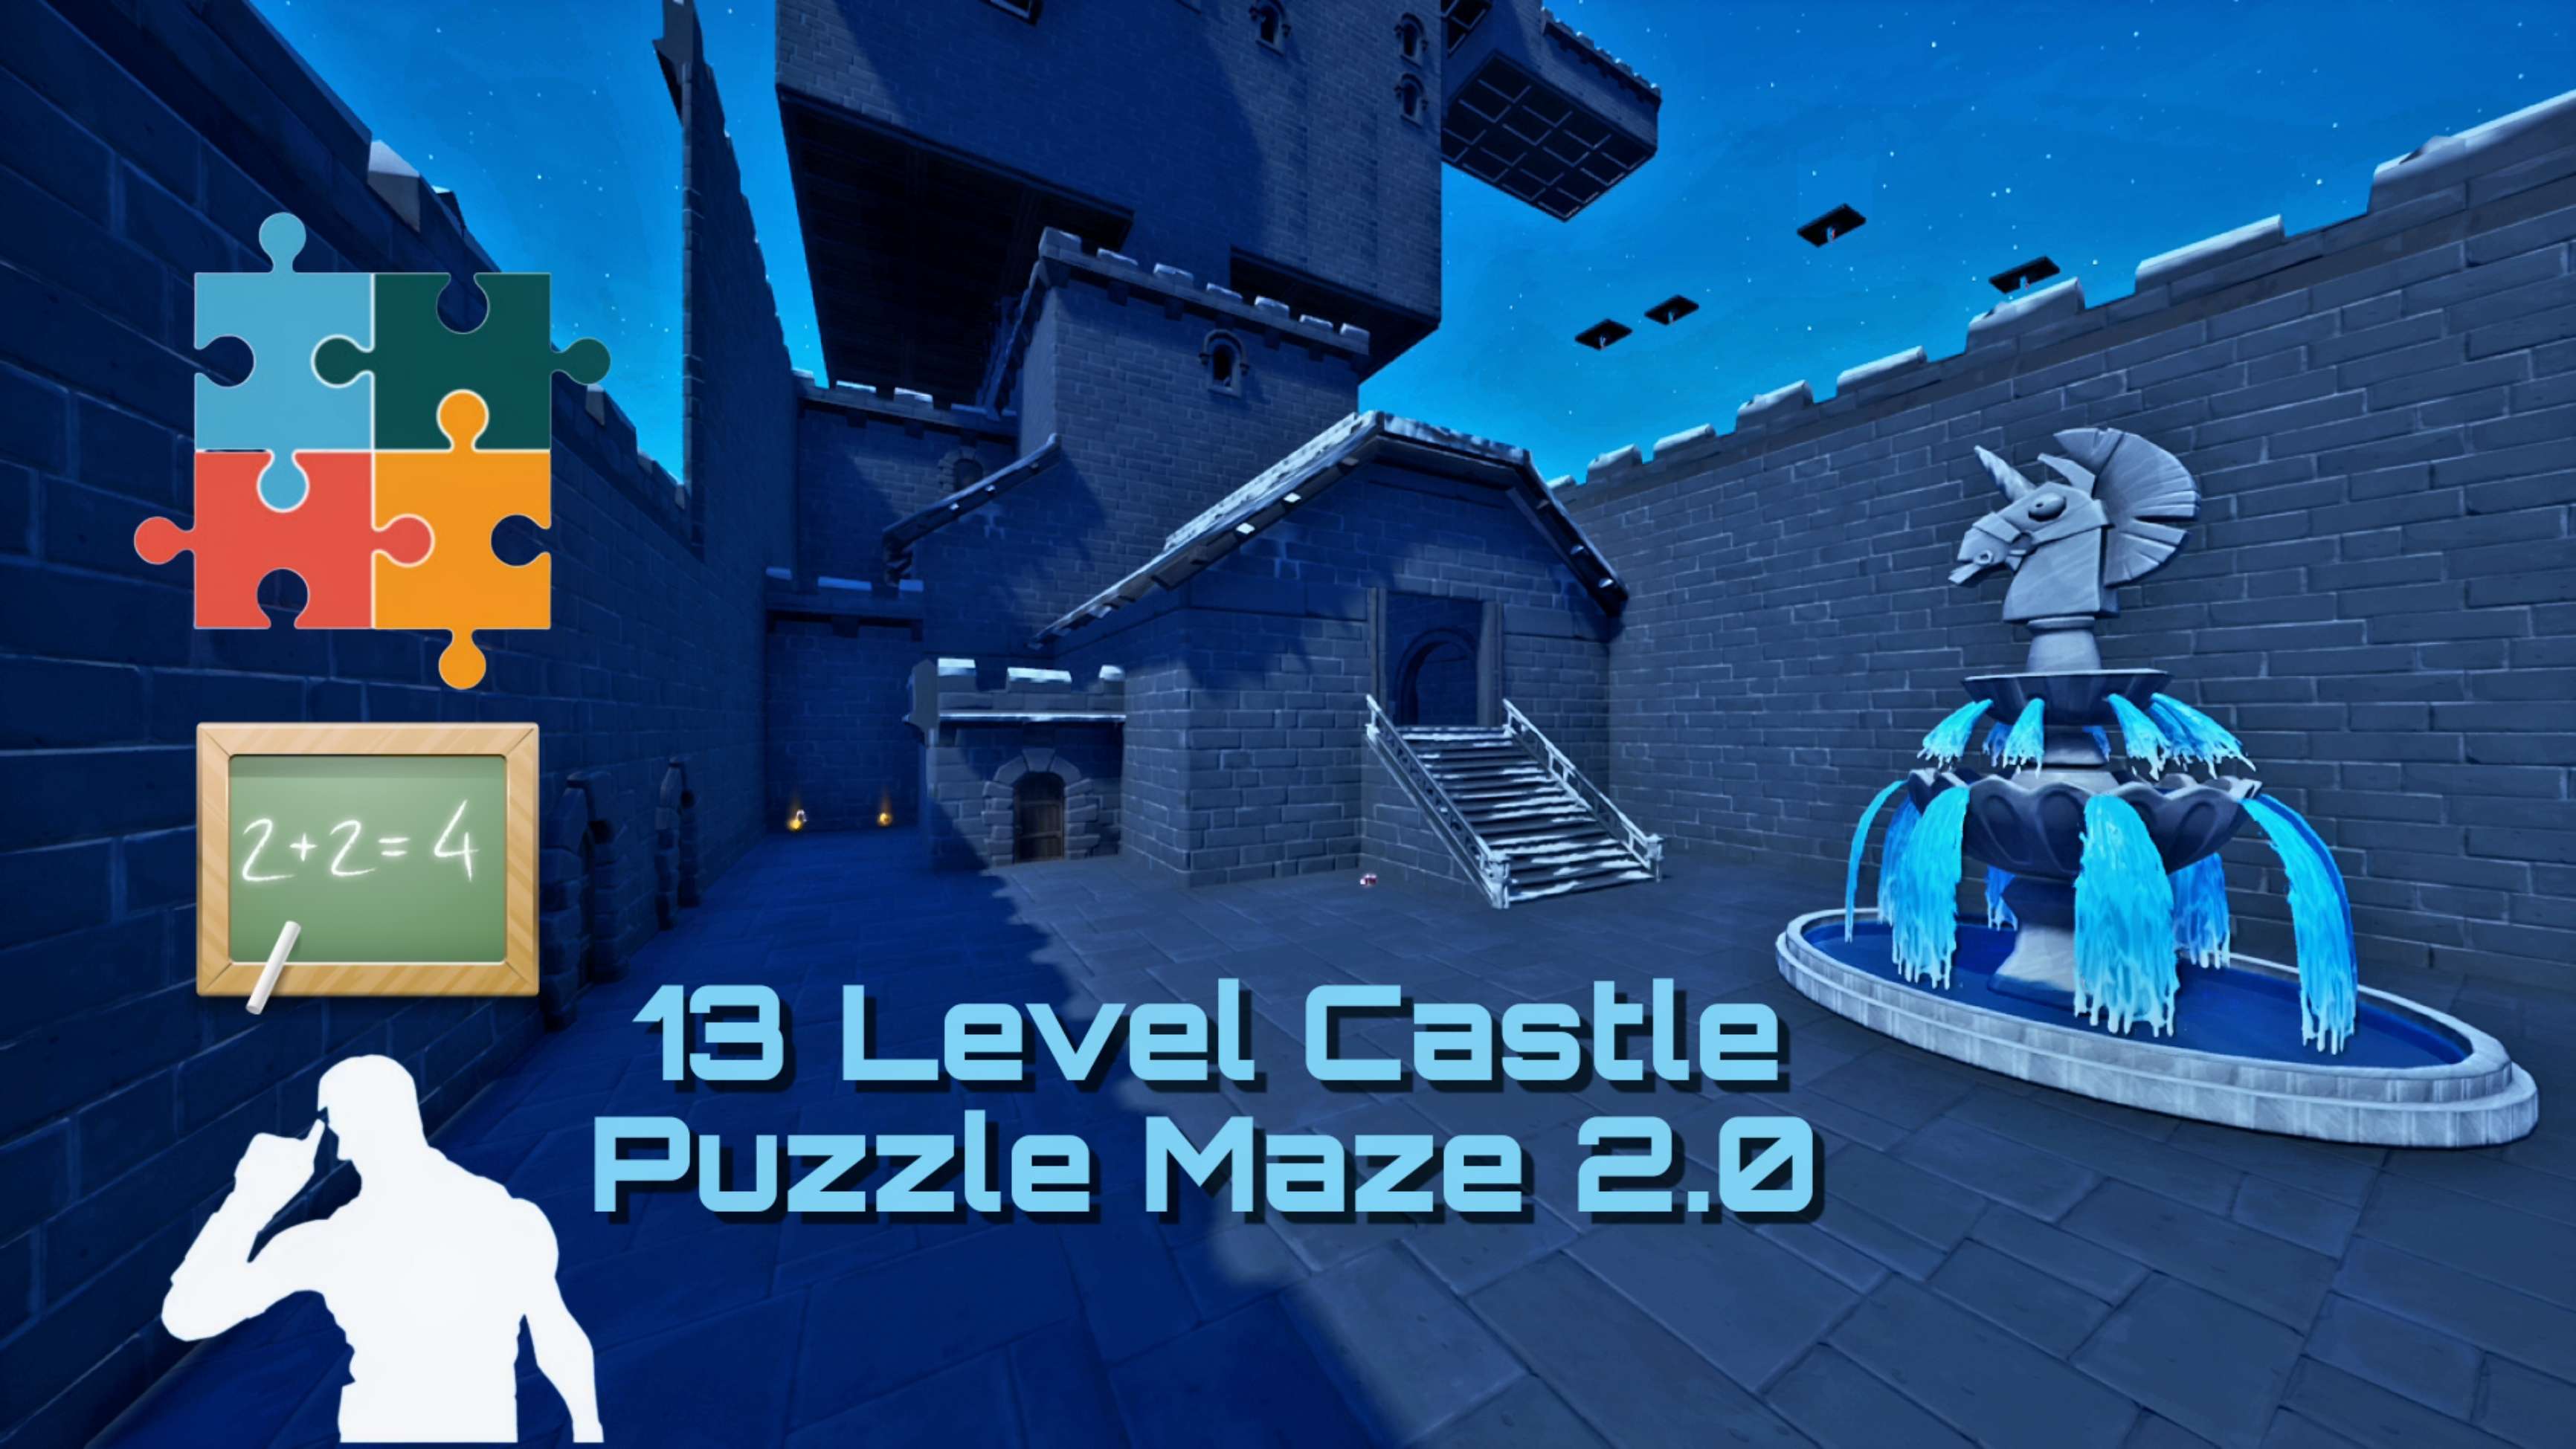 13 Level Castle Puzzle Maze 2.0